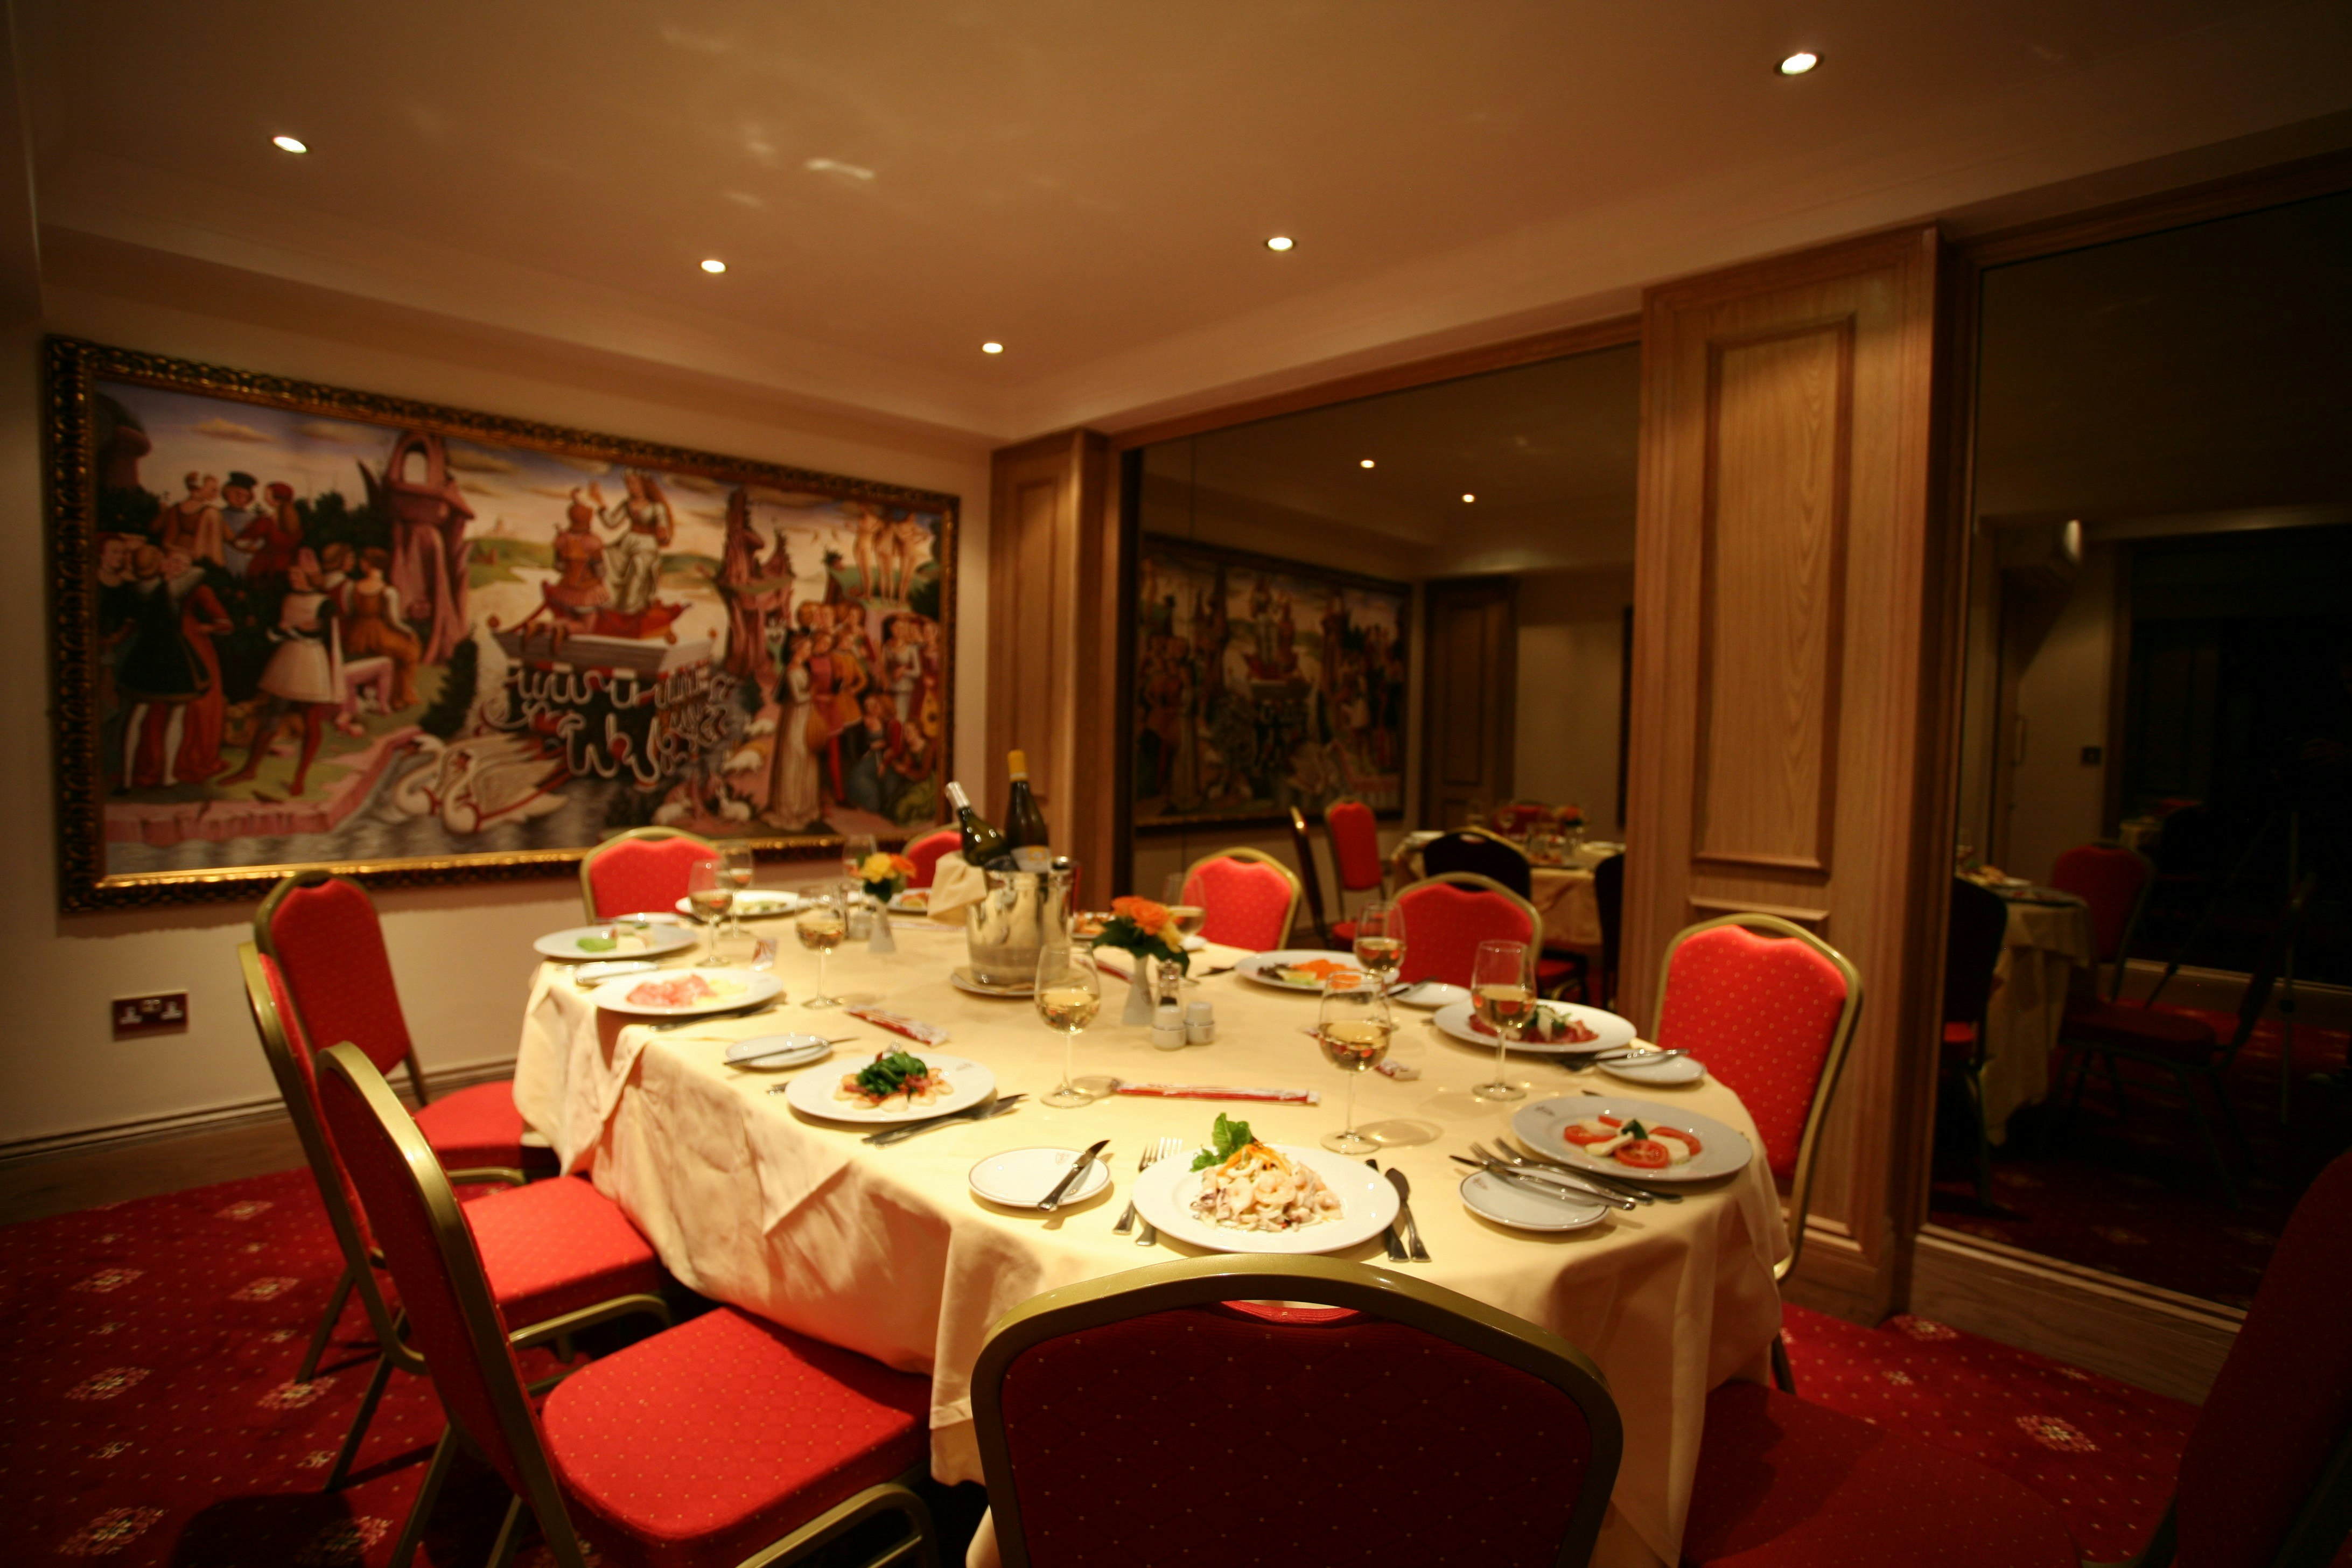 Bolton's Restaurant - Venetian Room image 6